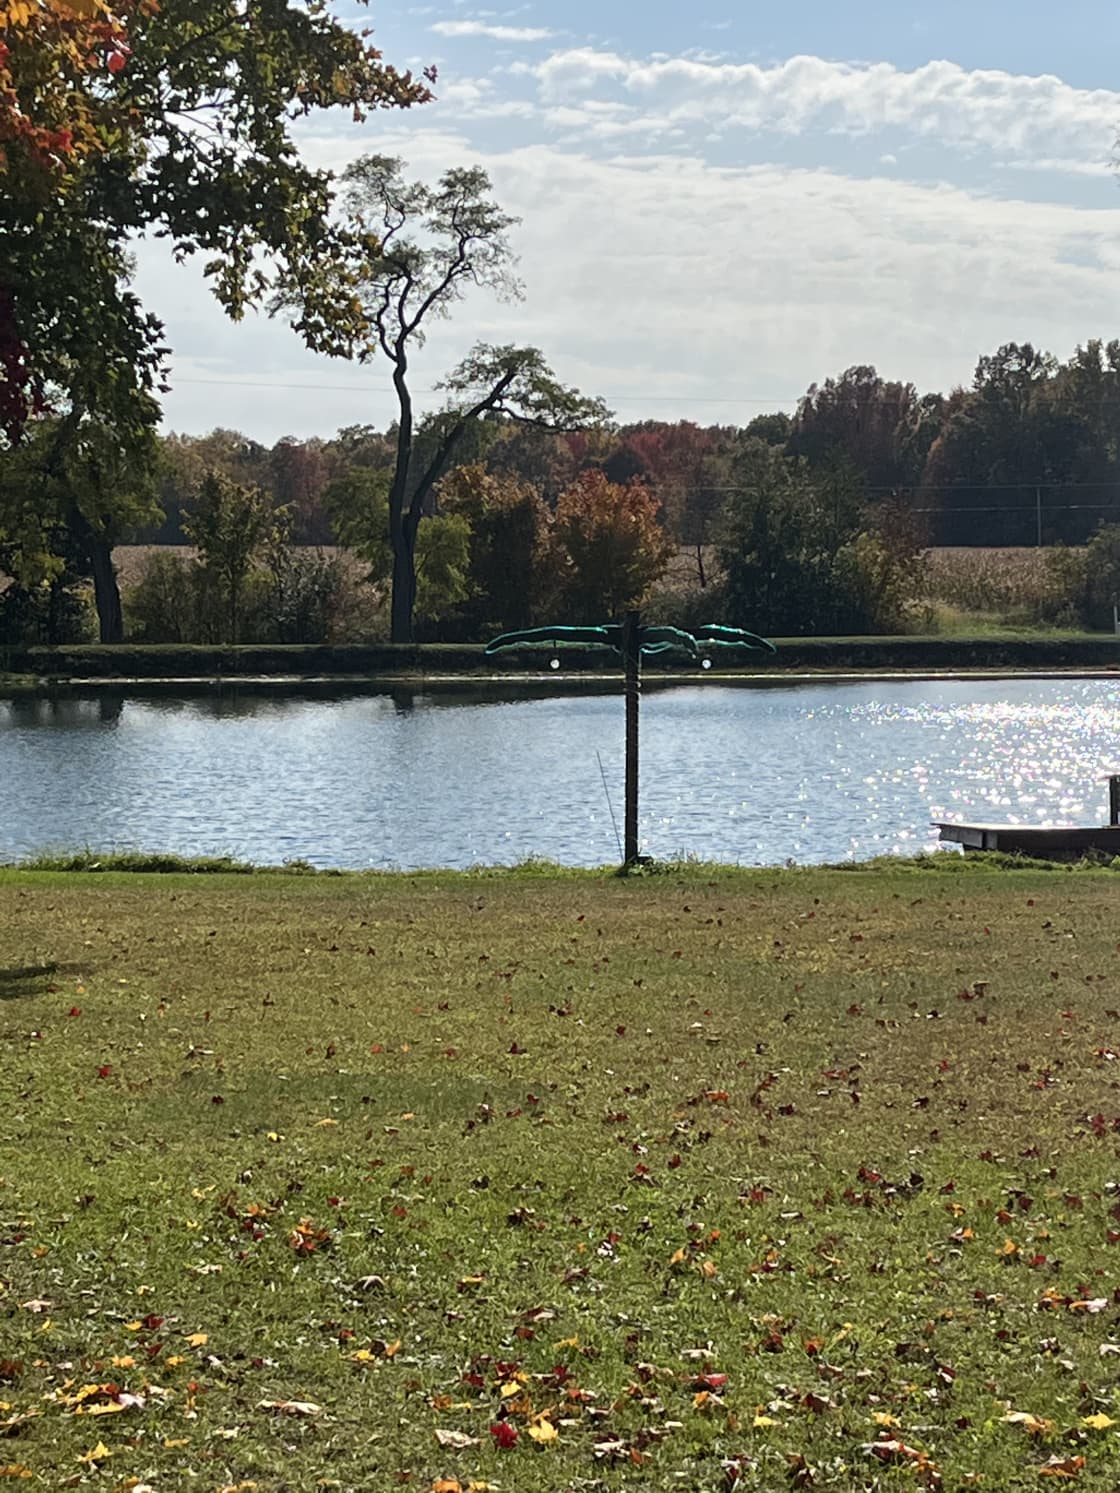 Marra Lake in Ellsworth, Ohio